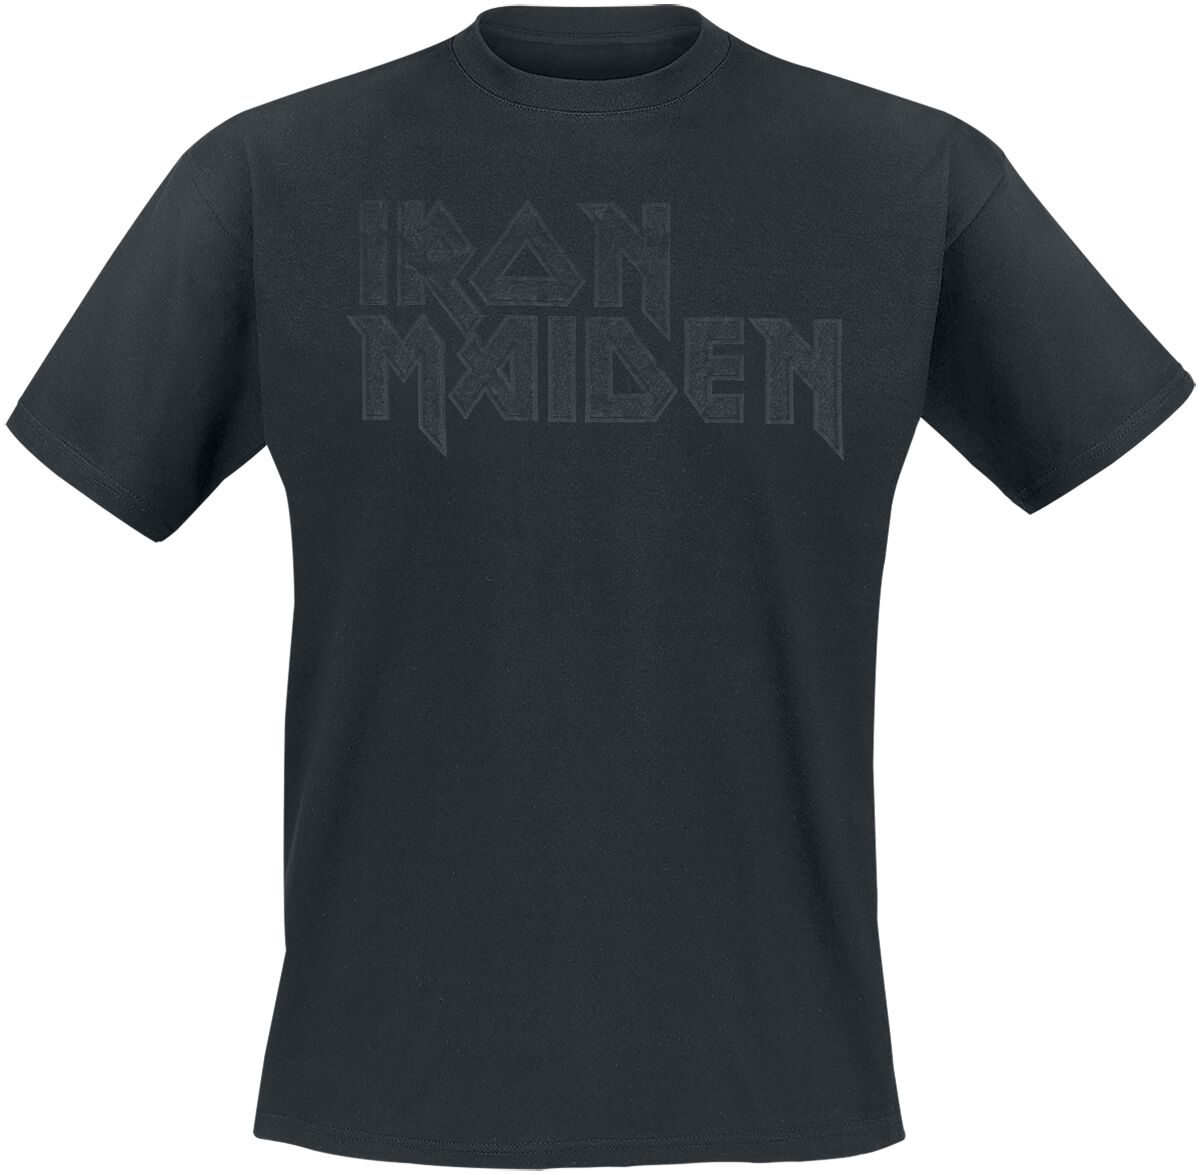 Iron Maiden T-Shirt - Black On Black Logo Stacked - S bis 4XL - für Männer - Größe L - schwarz  - Lizenziertes Merchandise!